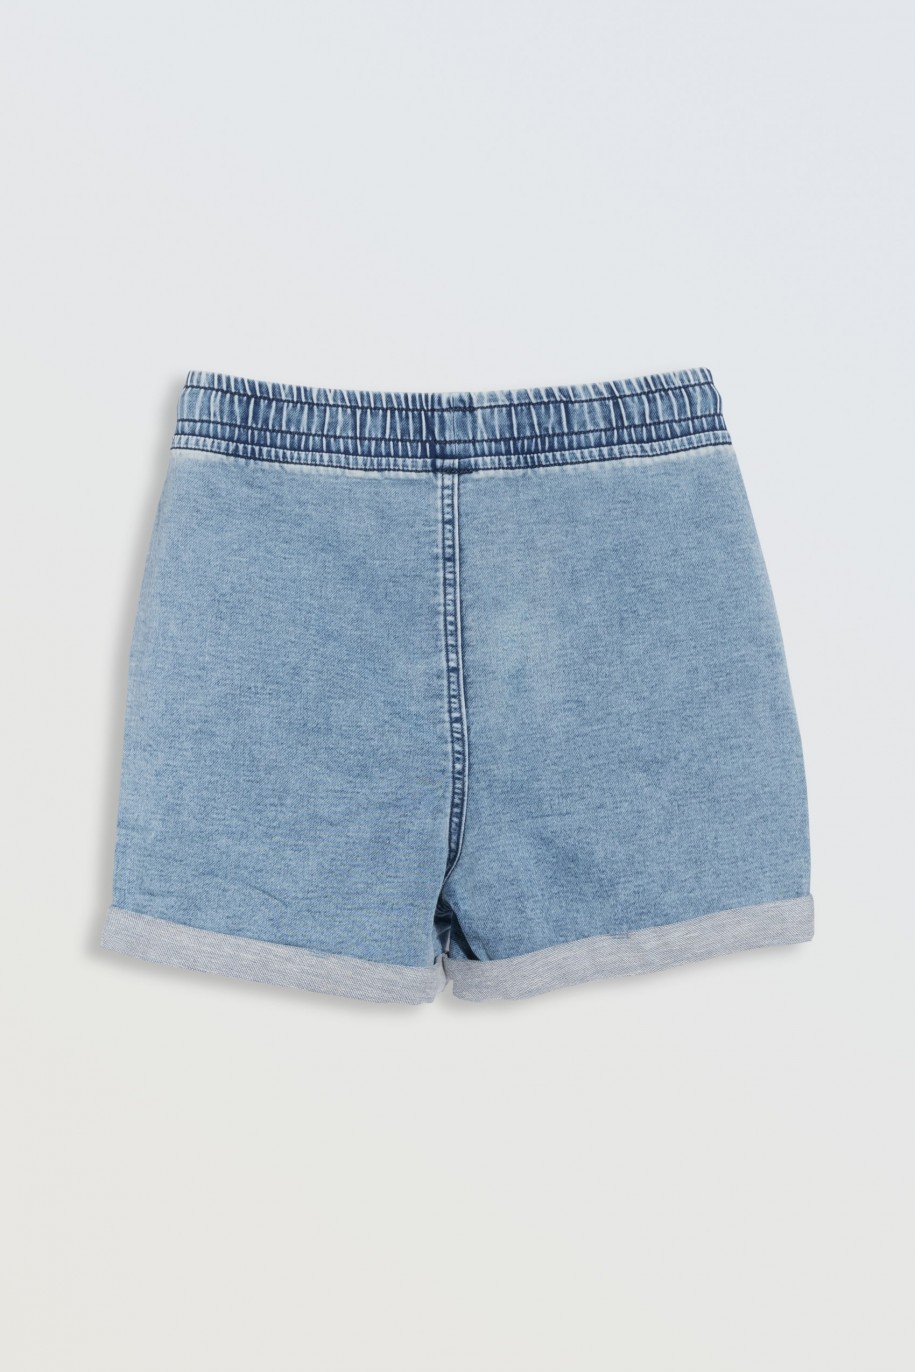 Jasnoniebieskie krótkie spodenki jeansowe z wywijanymi nogawkami - 46787